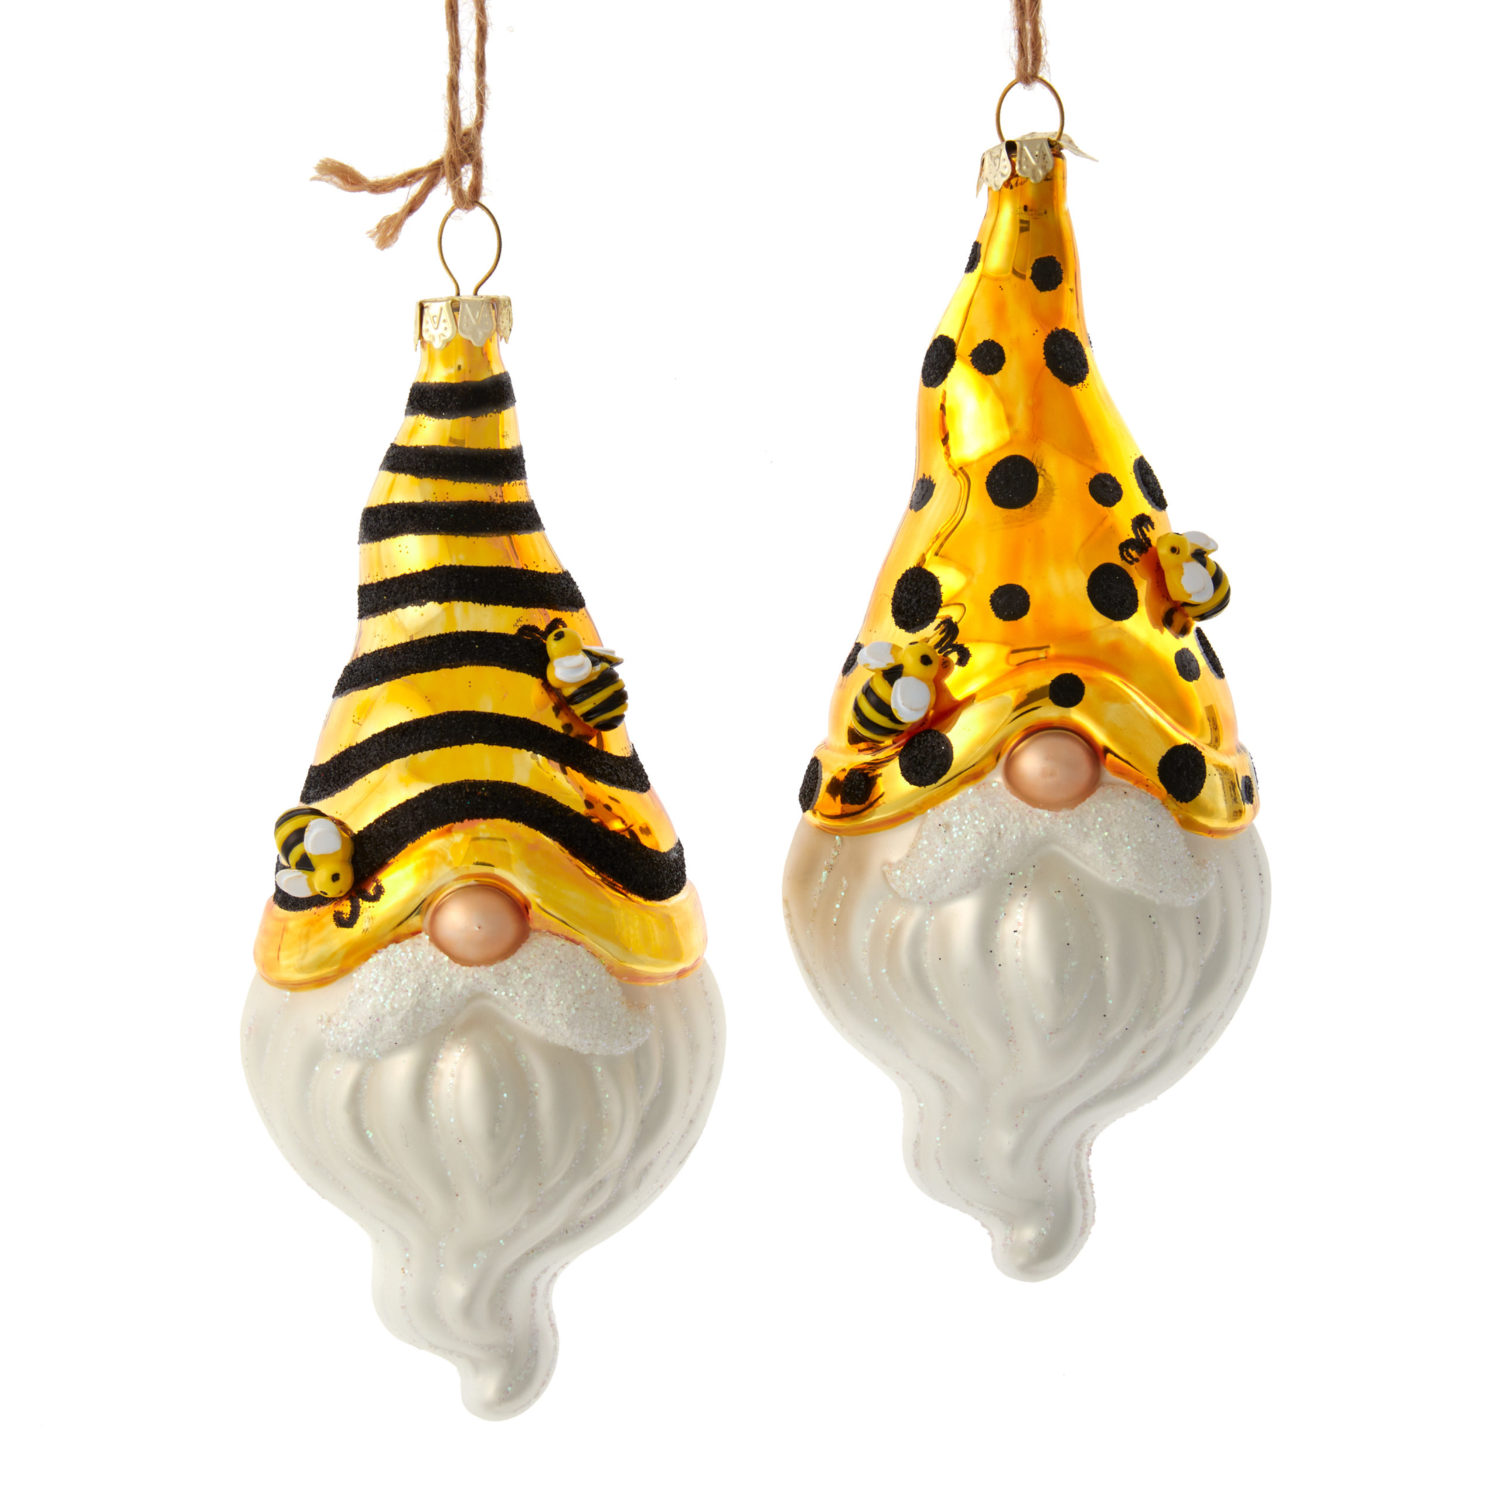 Kurt S Adler Gnome Ornaments